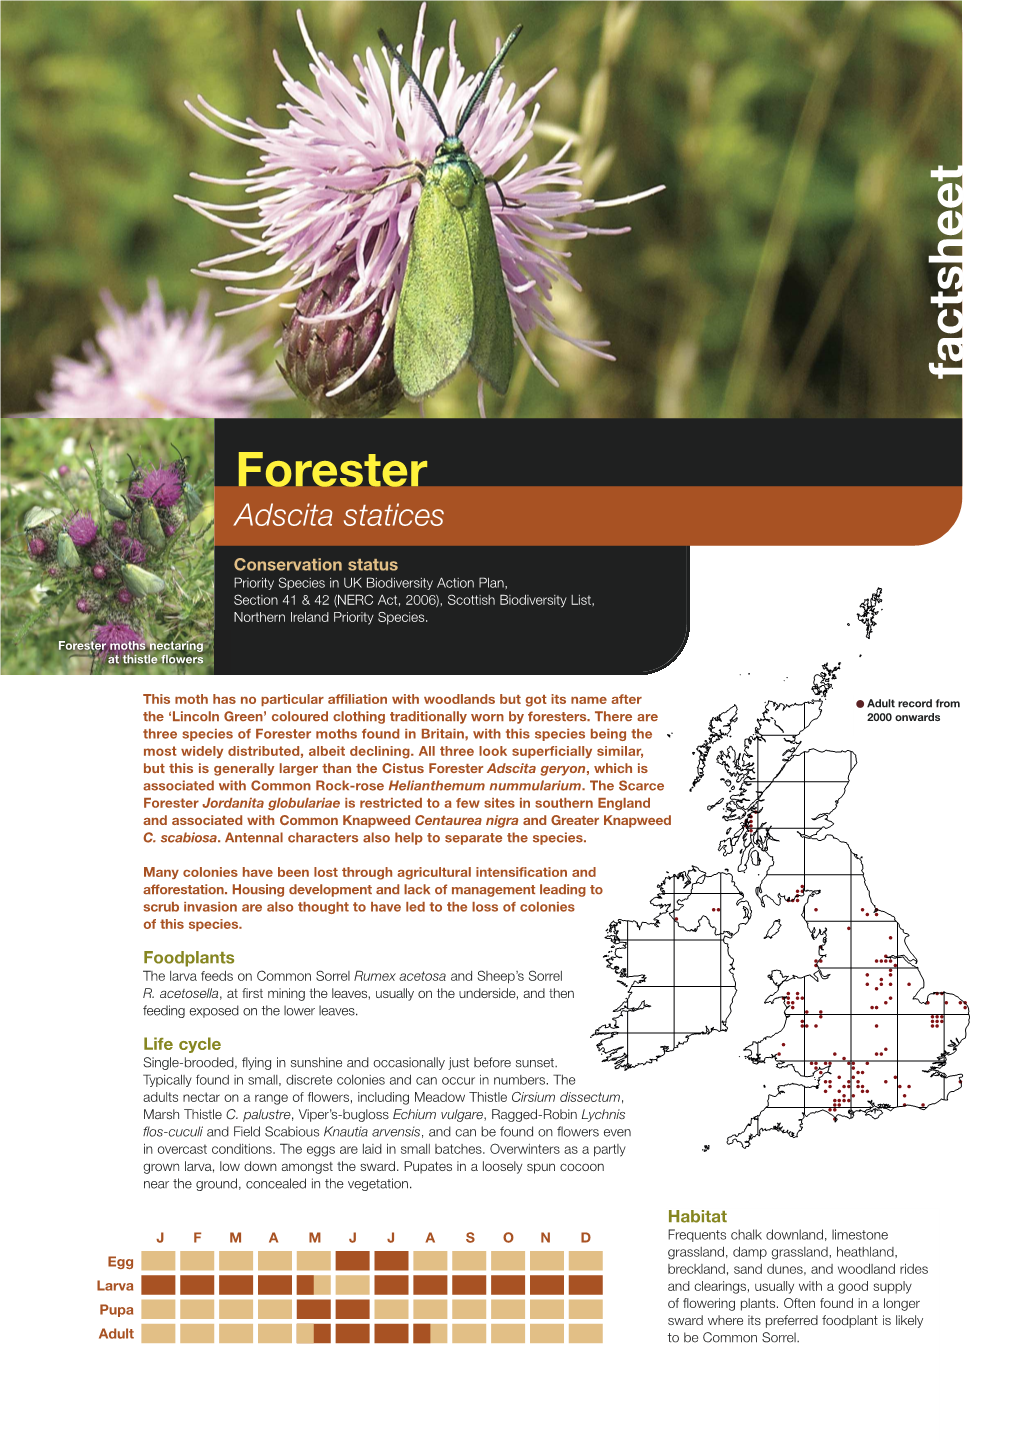 Forester Priority Species Factsheet